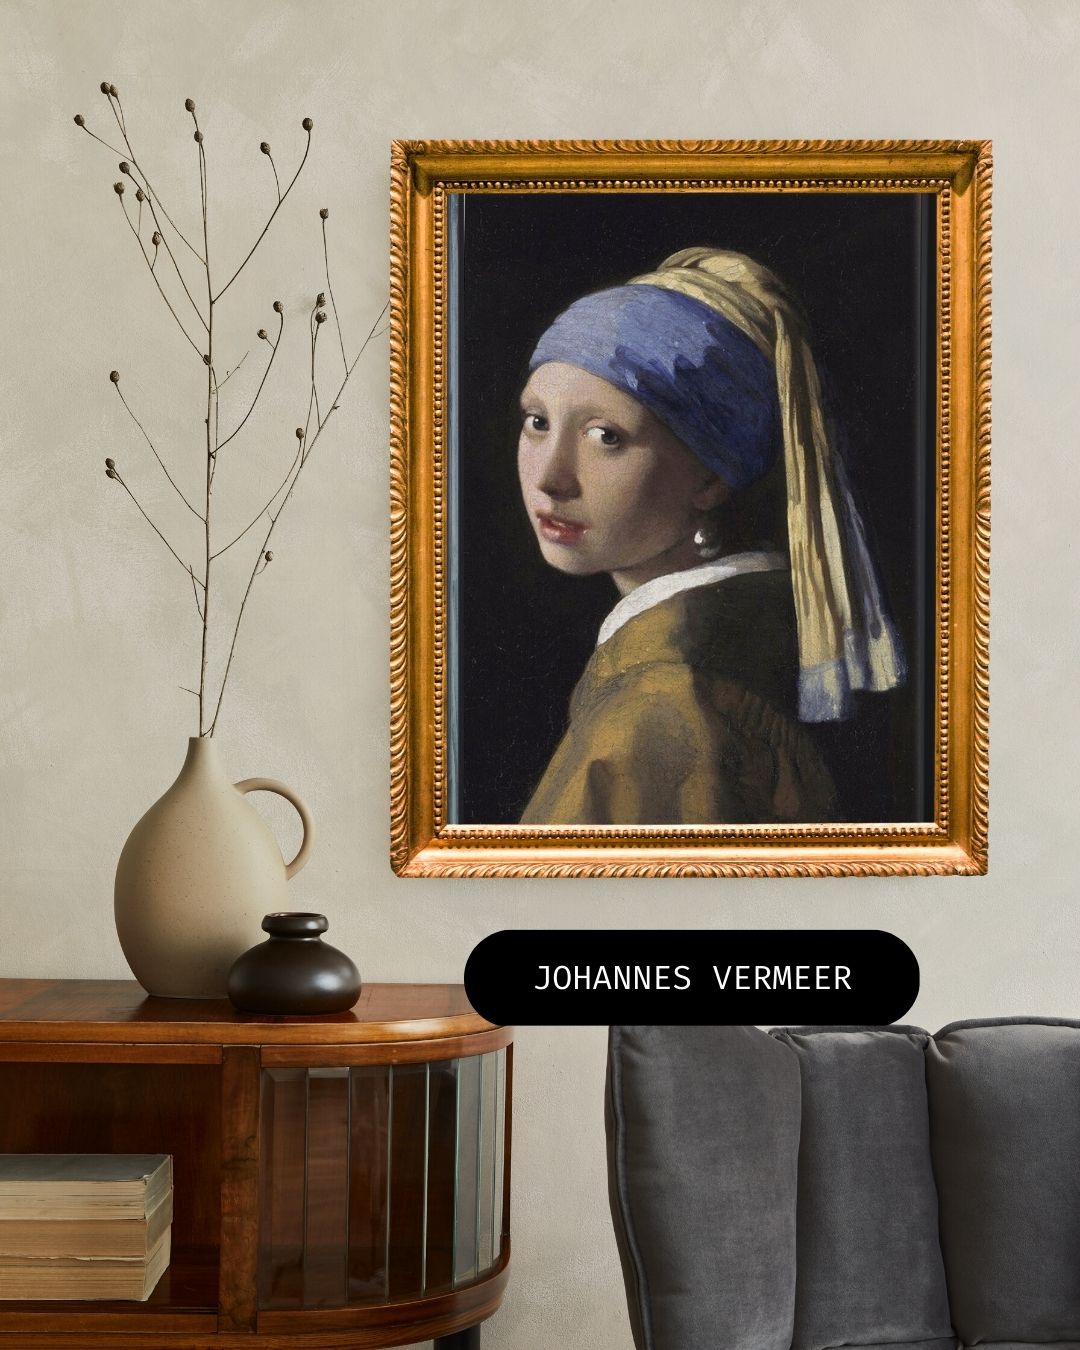 Hoe werd Johannes Vermeer beroemd en gebruikte hij een camera obscura?